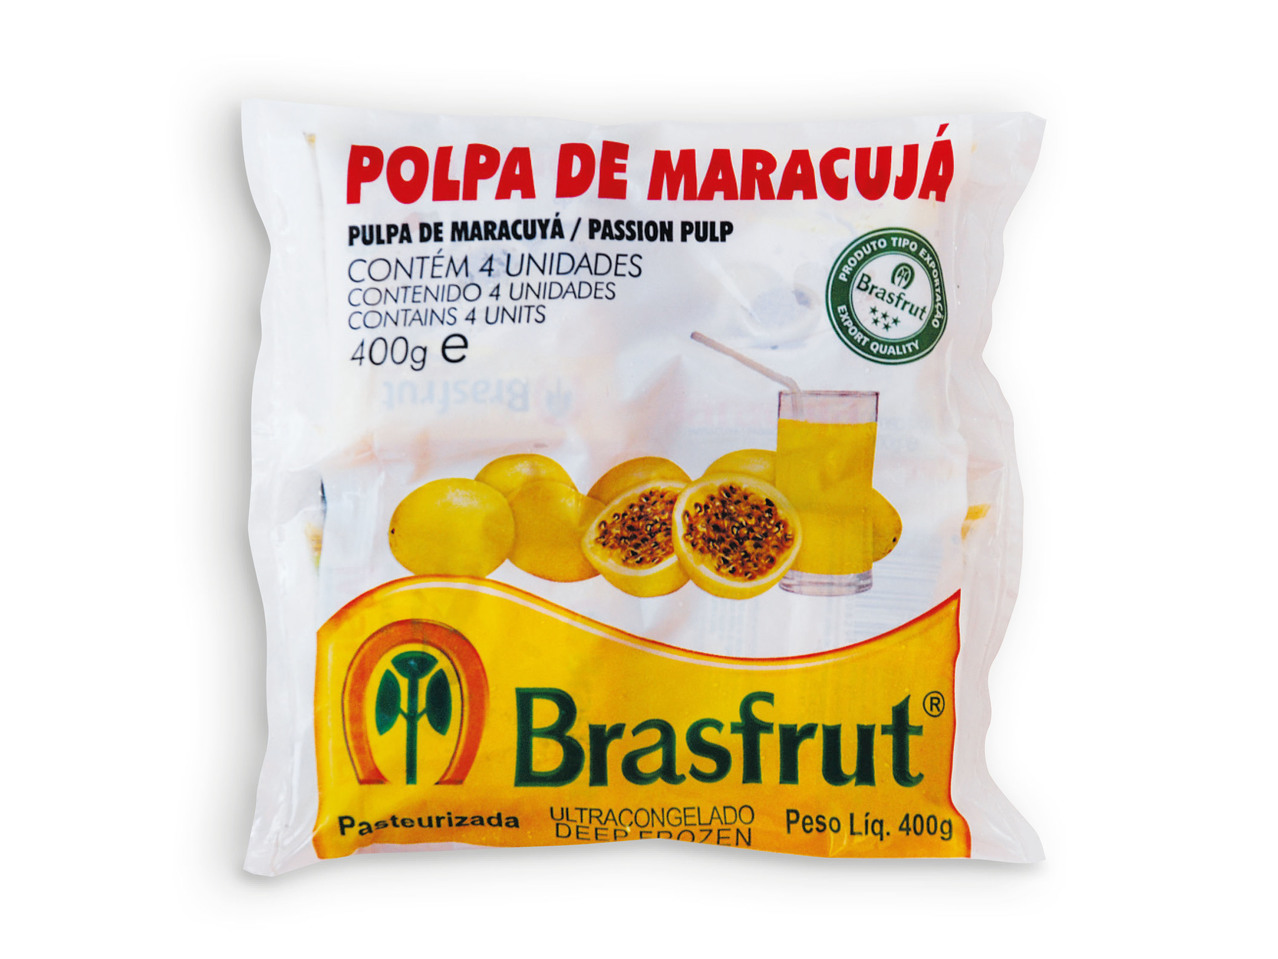 BRASFRUT(R) Polpa de Maracujá